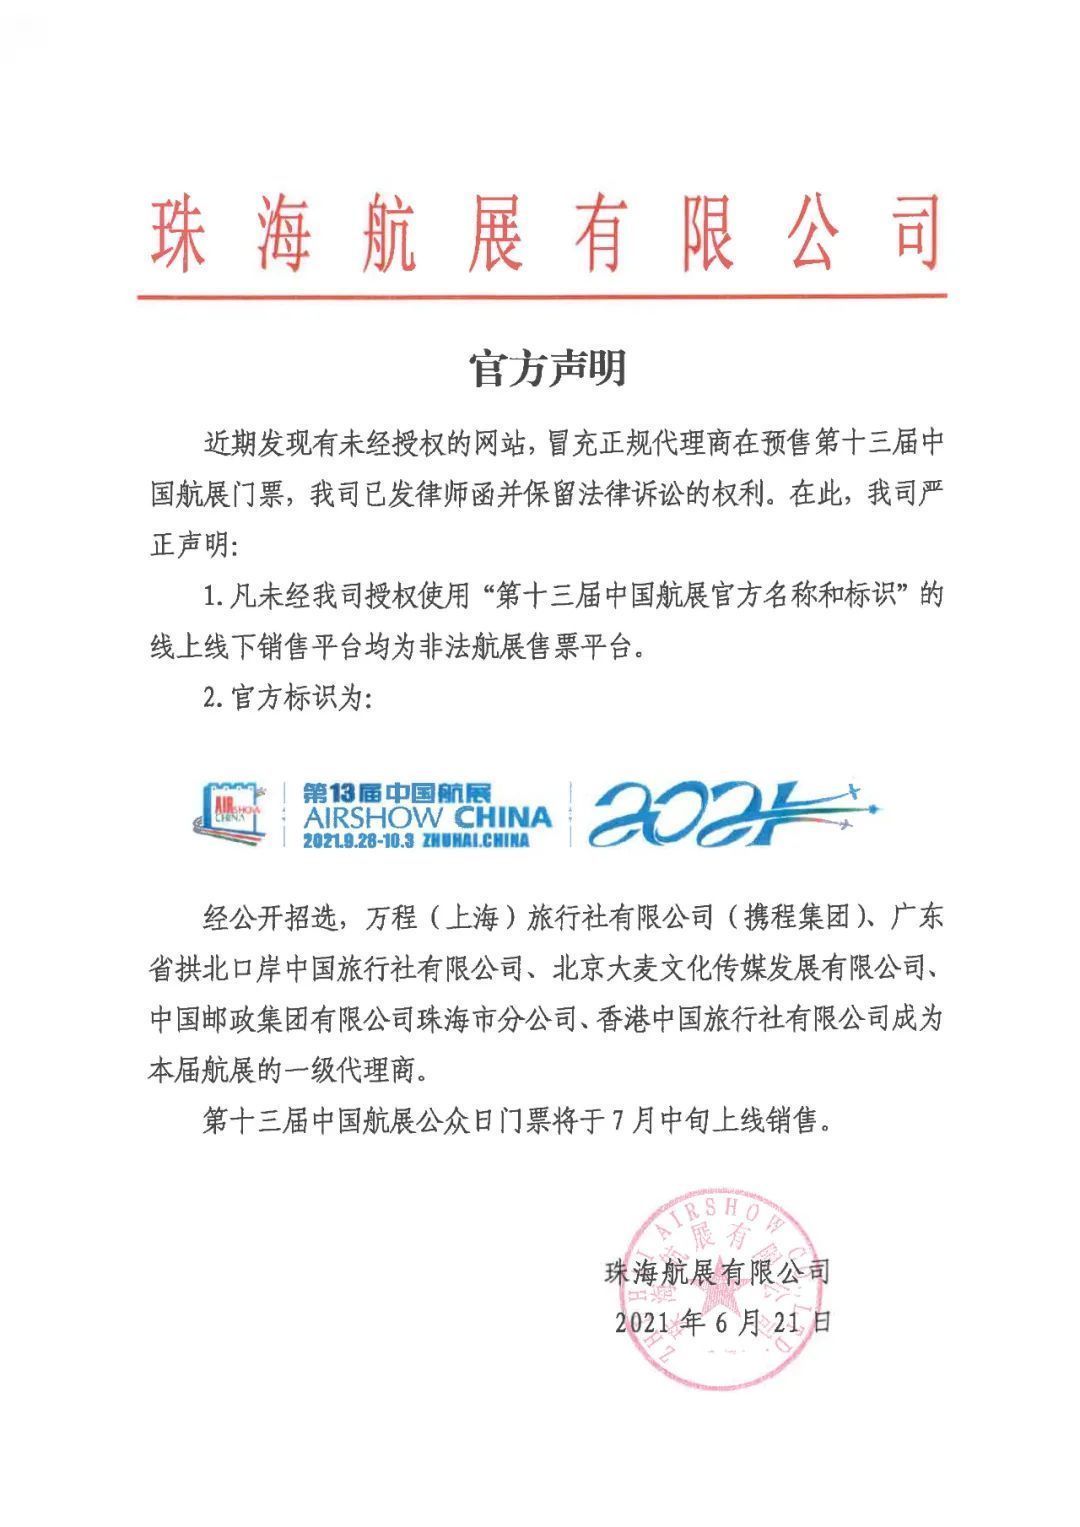 中国航展发布官方标识，公众日门票将于7月中旬上线销售